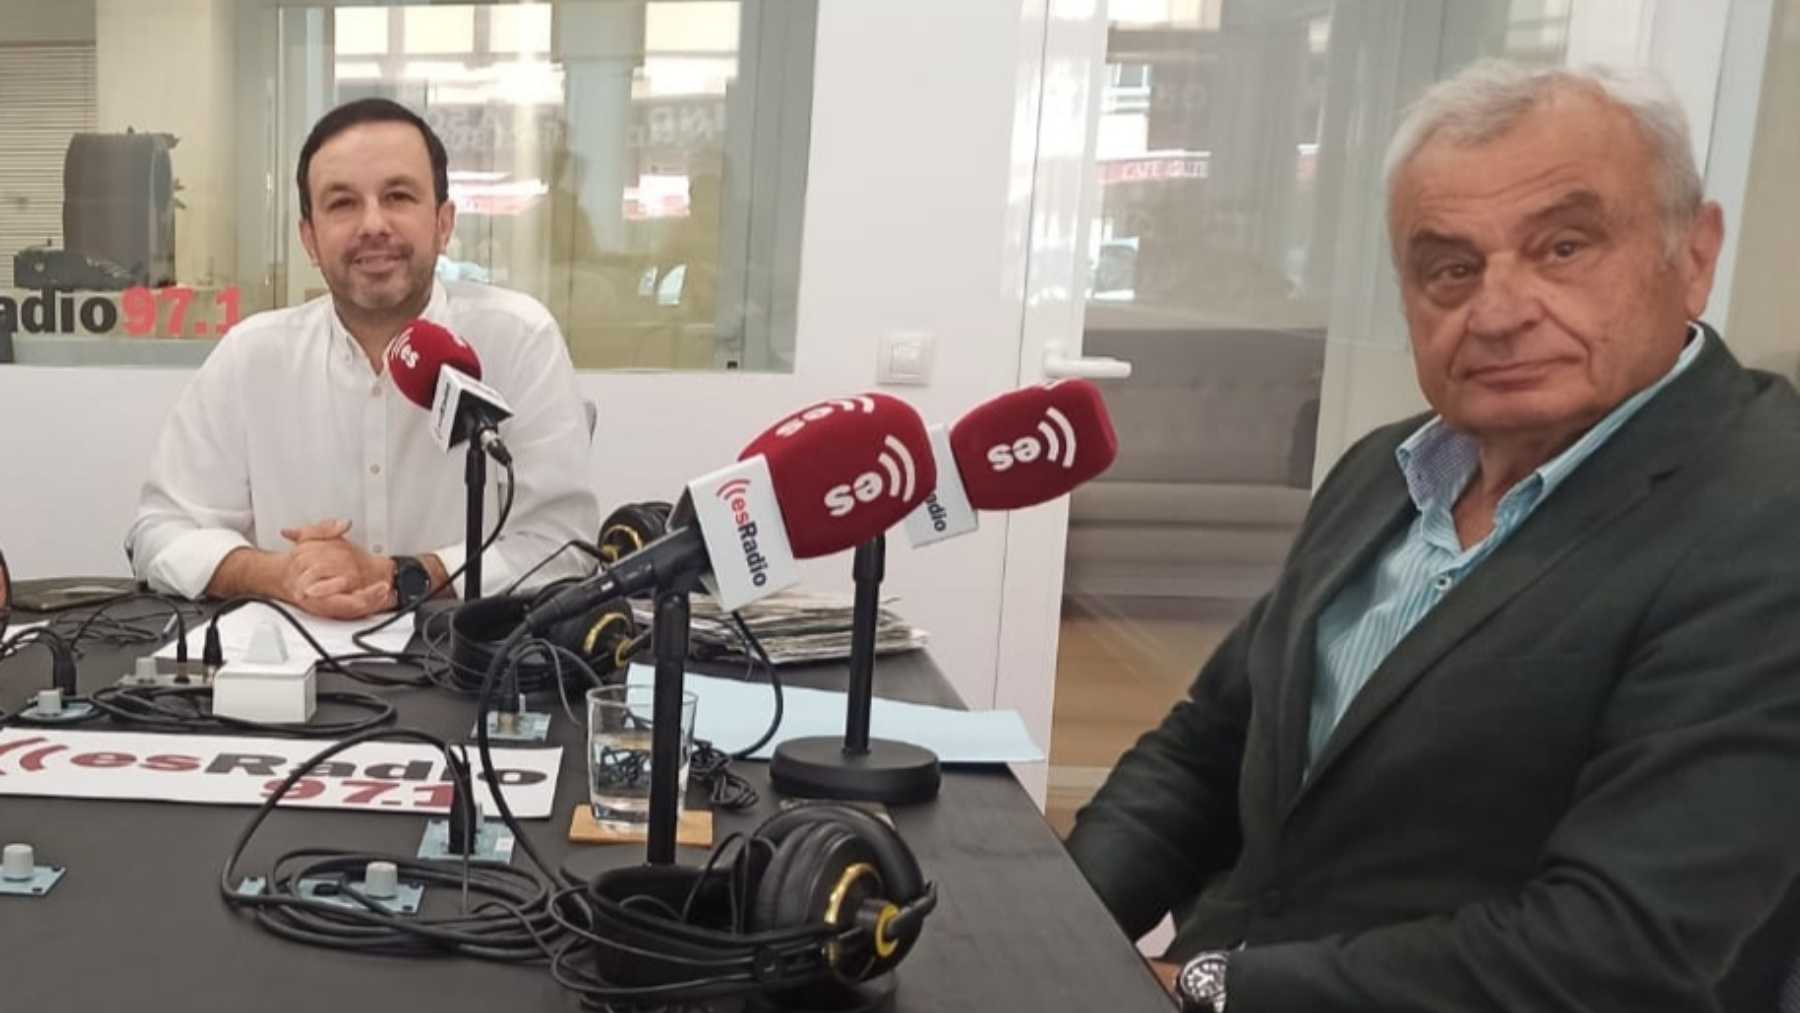 El líder de Vox en Palma, Fulgencio Coll, entrevistado por Gabriel Torrens en esRadio97.1.